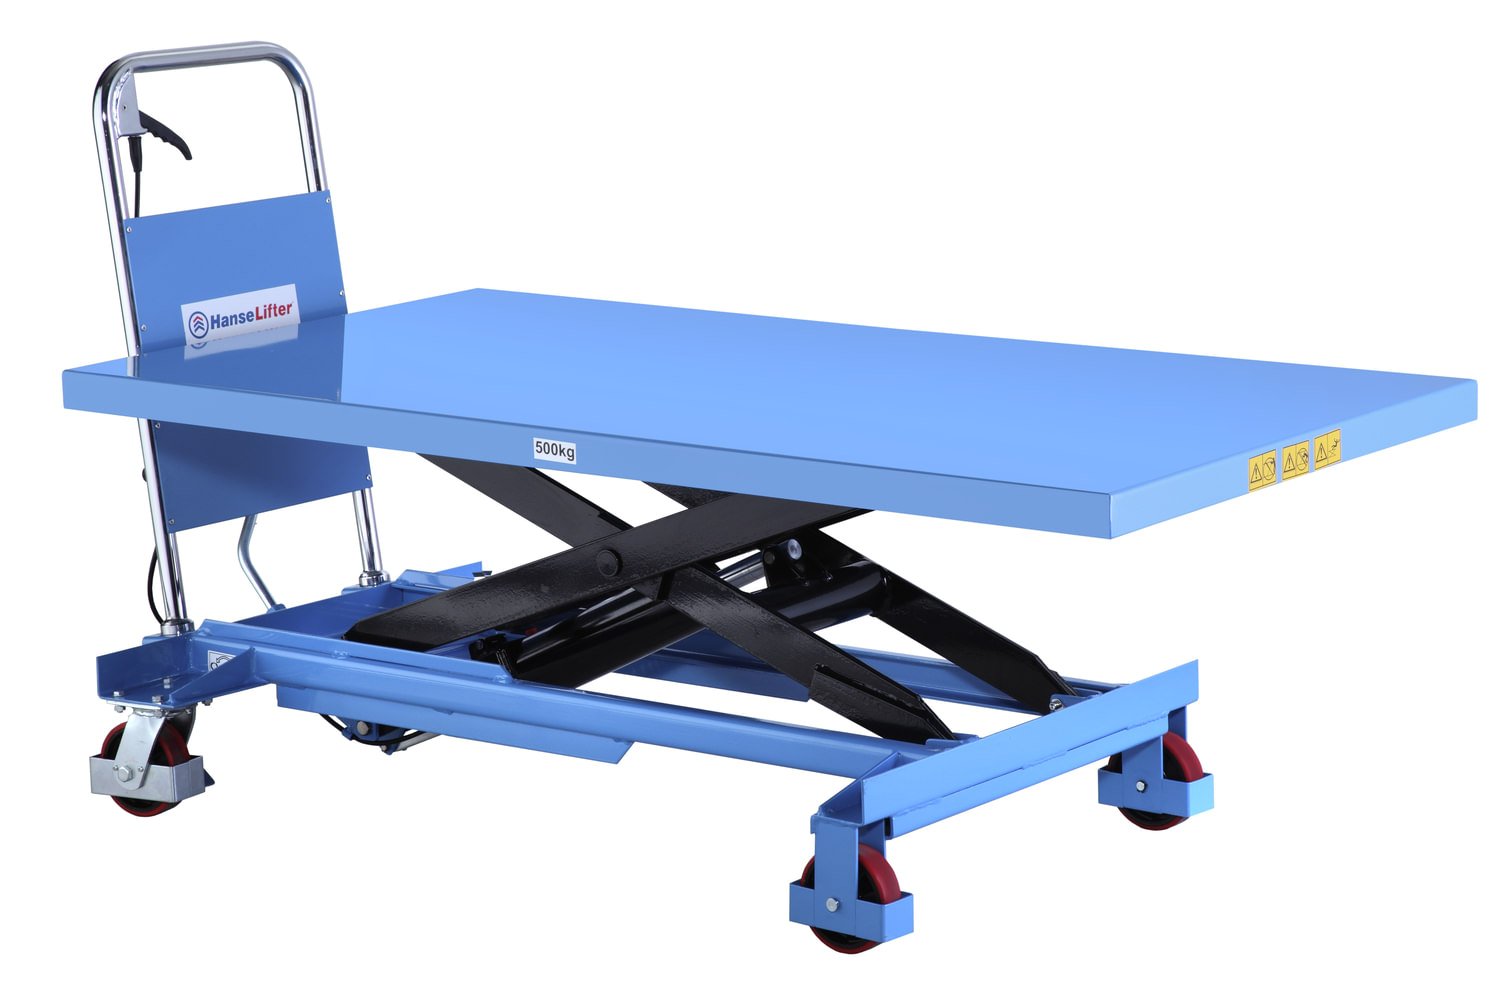 HanseLifter SPB500 mobiler Hubtisch mit großer Plattform und 500kg Tragfähigkeit, Lichtblau